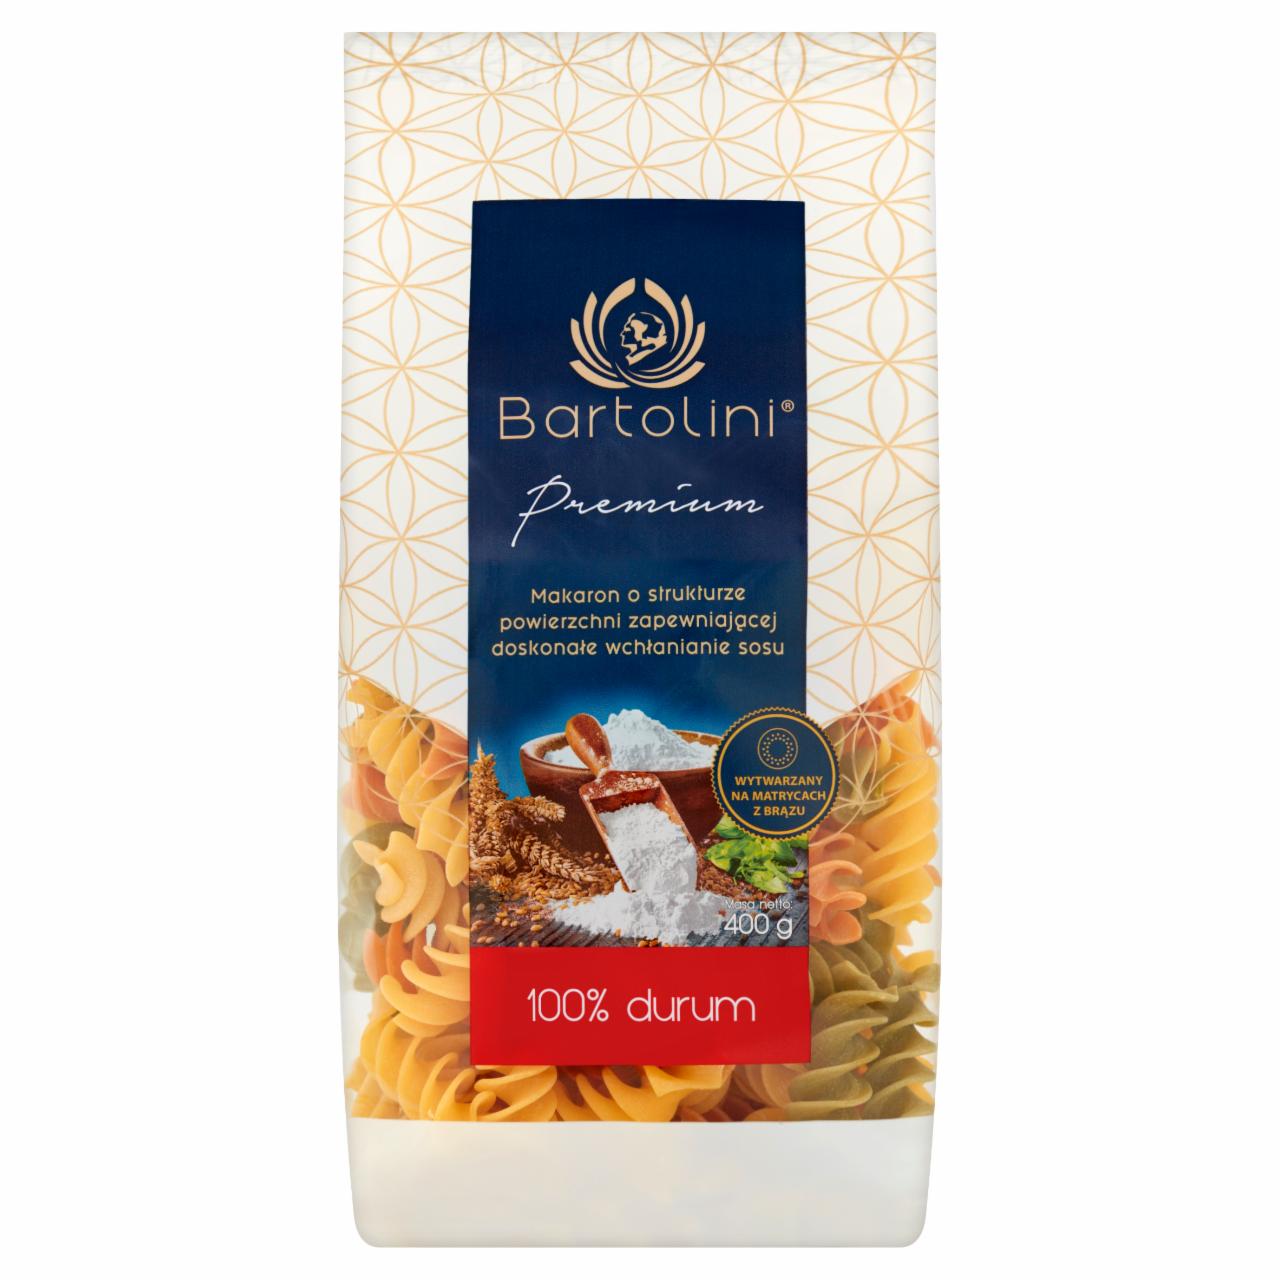 Zdjęcia - Bartolini Premium Makaron 100% durum świderek nr 4 smakowy 400 g